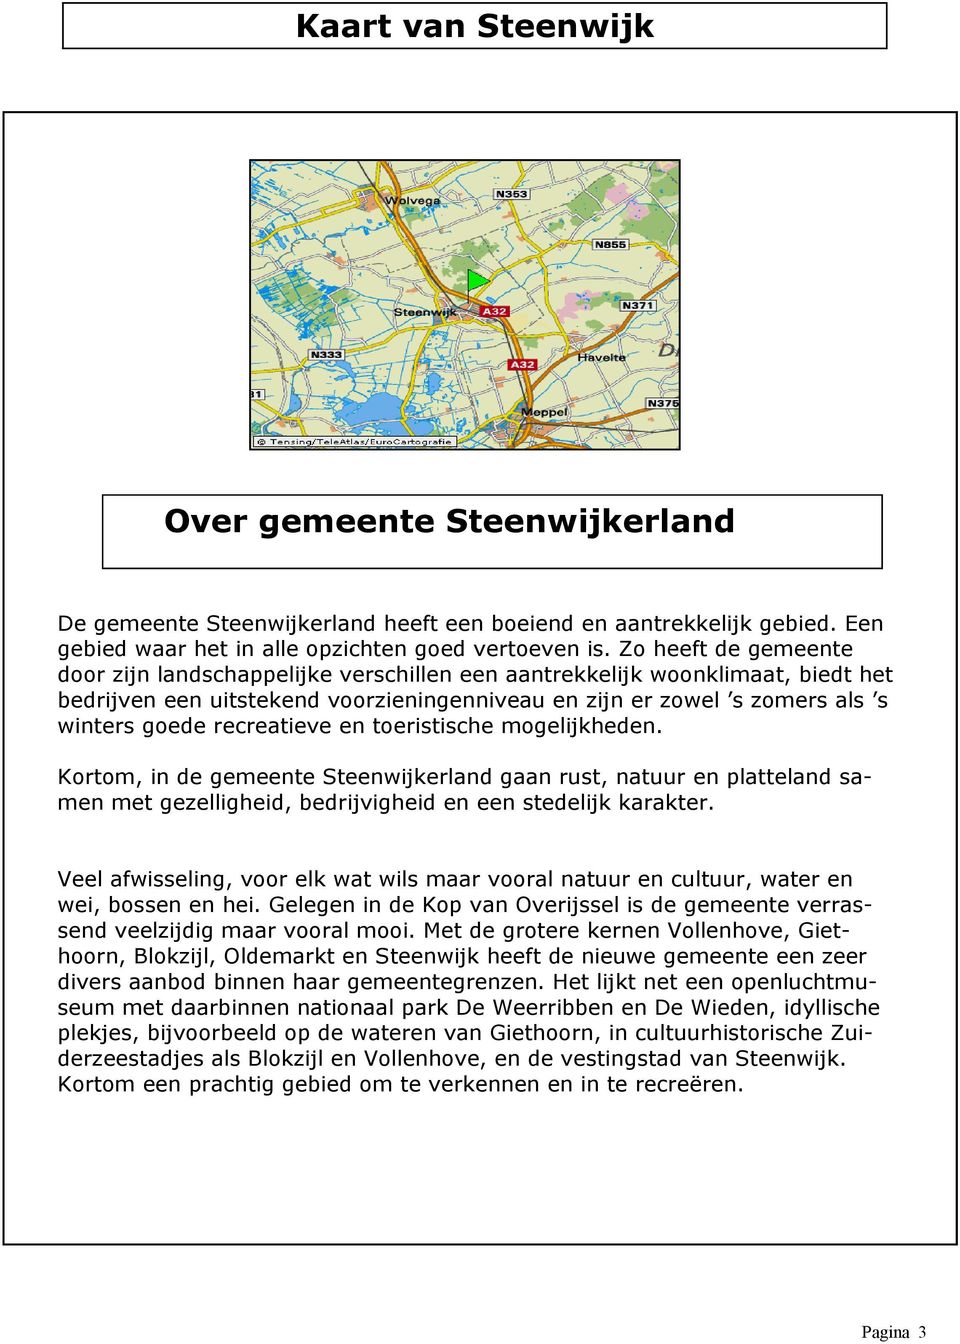 recreatieve en toeristische mogelijkheden. Kortom, in de gemeente Steenwijkerland gaan rust, natuur en platteland samen met gezelligheid, bedrijvigheid en een stedelijk karakter.